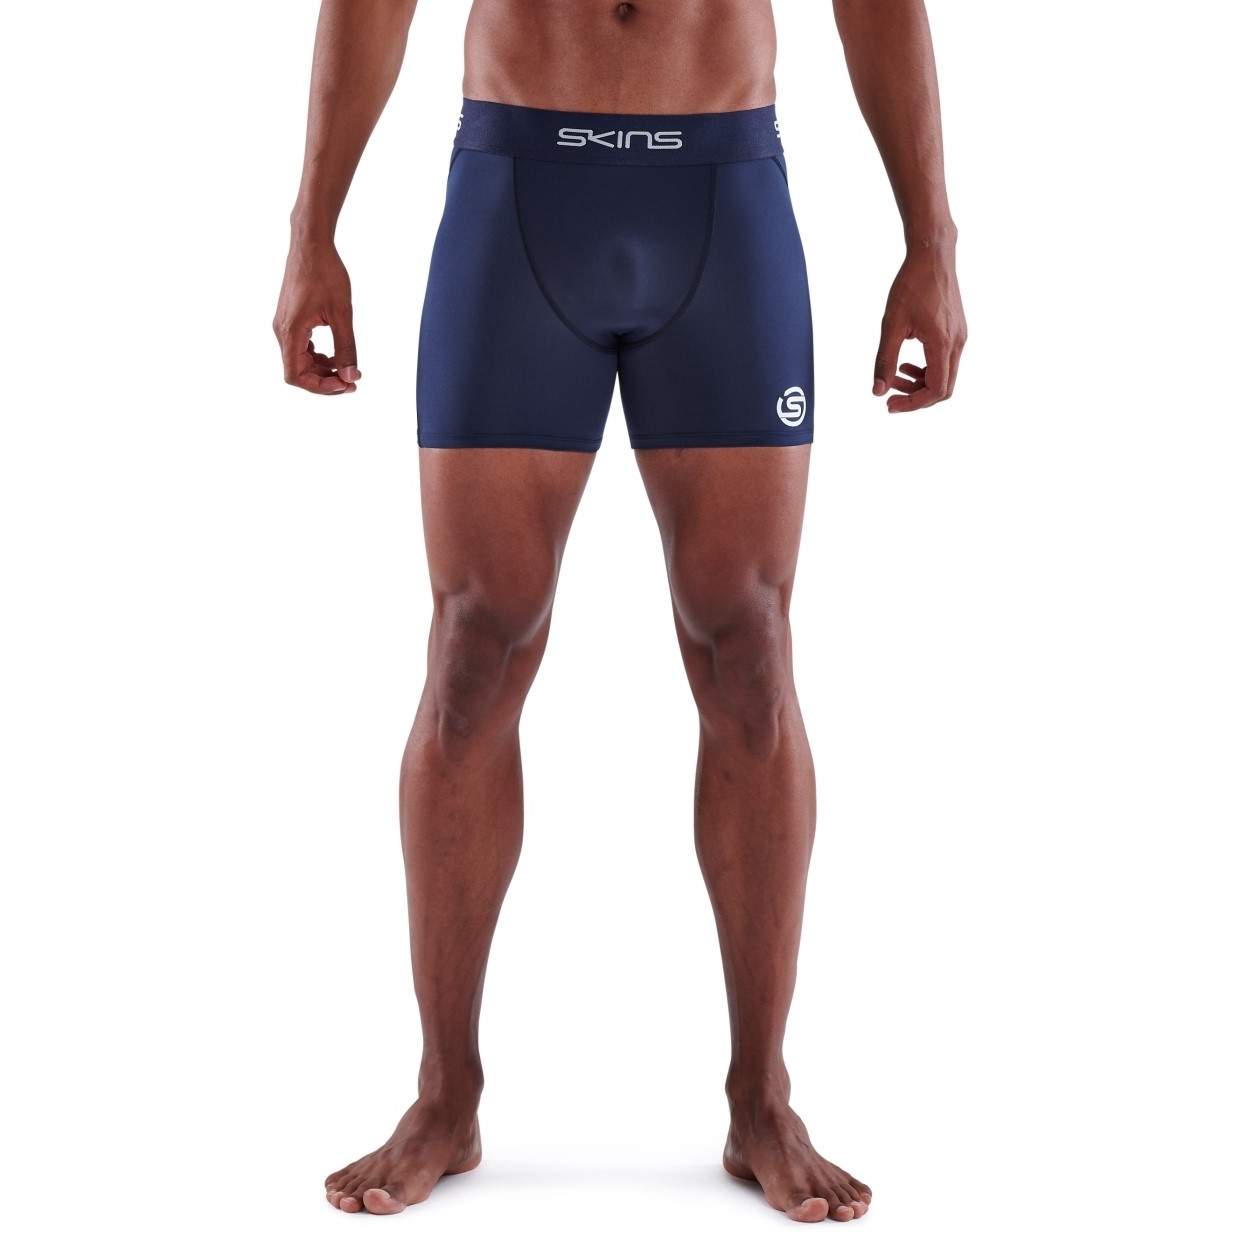 Produktbild von SKINS 1-Series Fitness-Shorts - Navy Blue